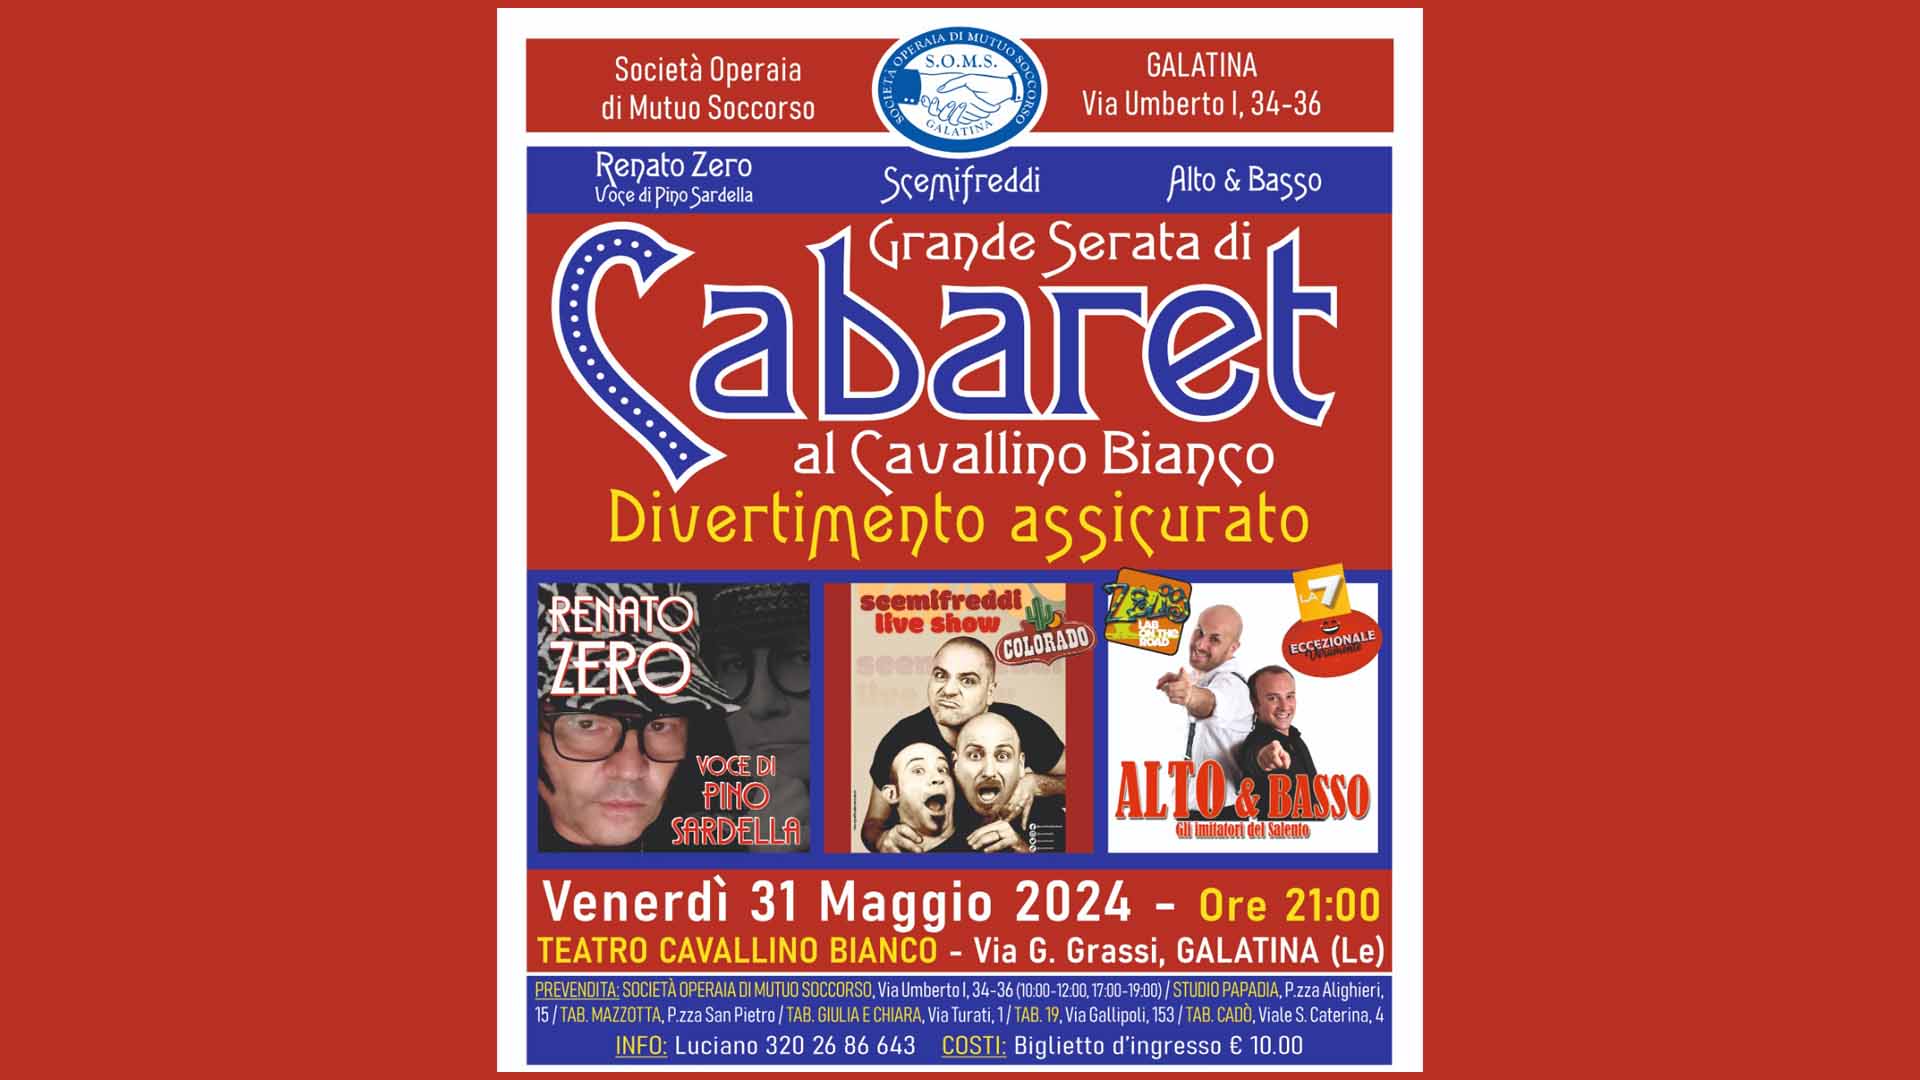 Cabaret Cavallino Biano 31-05-2024